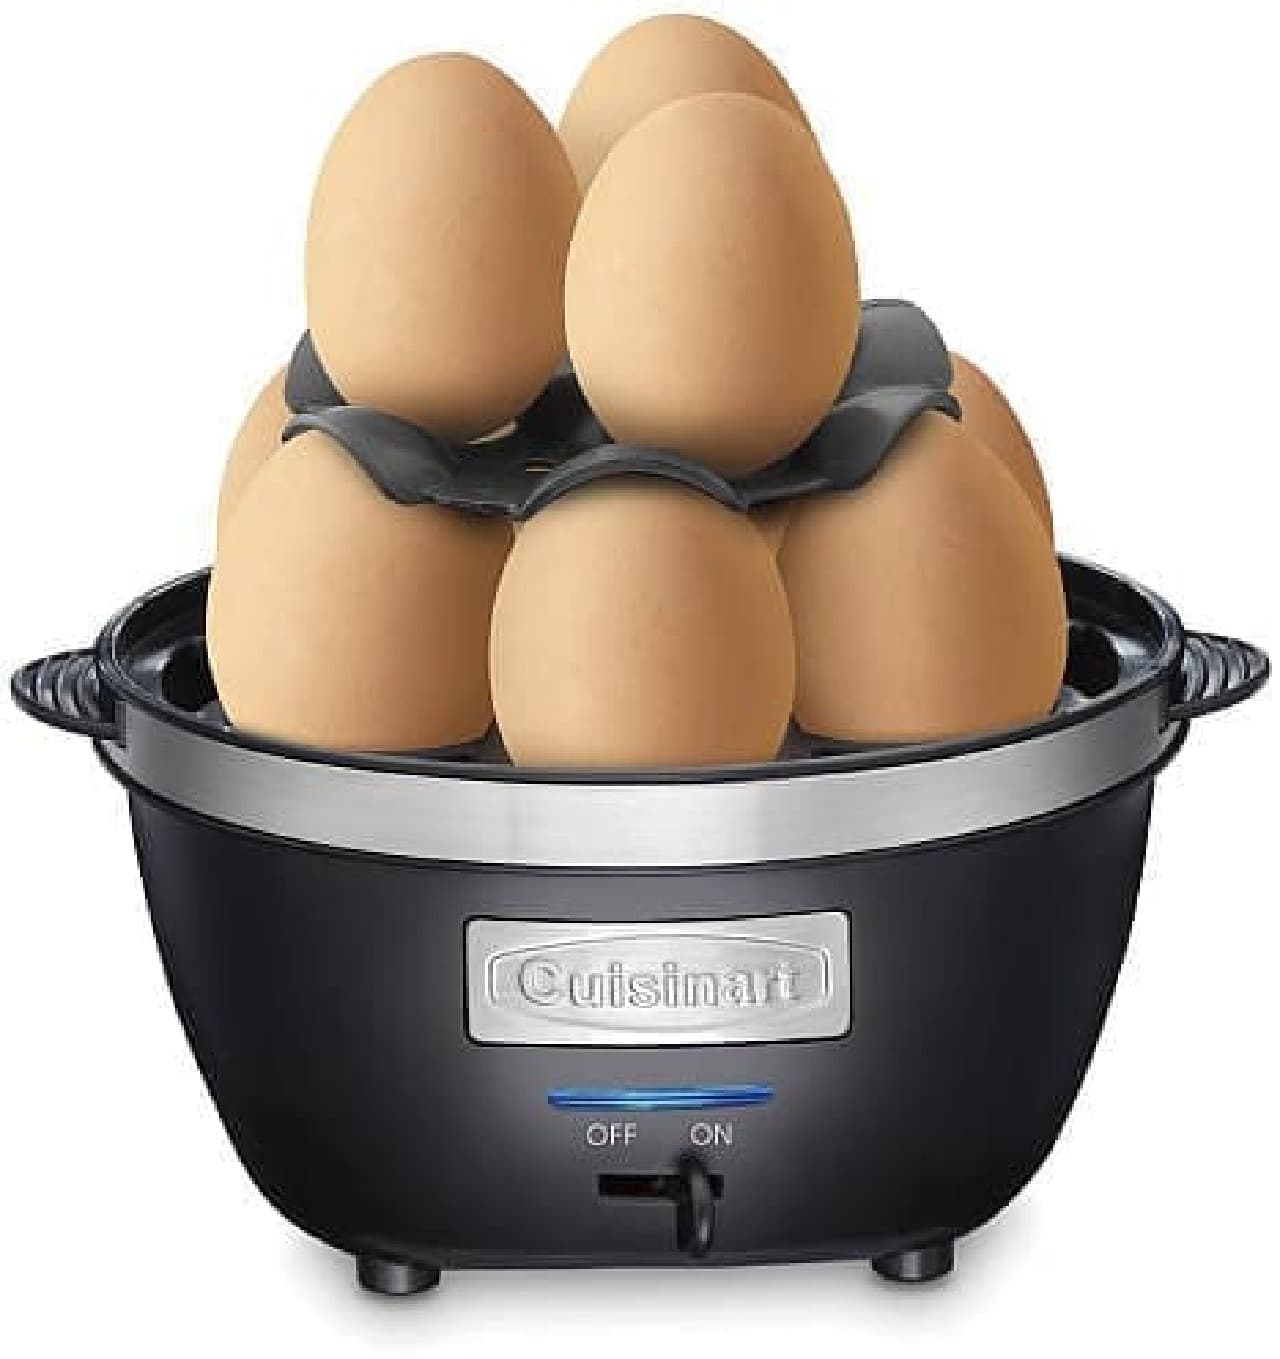 "CEC-10 Egg Central Egg Cooker" Boil 10 eggs at a time